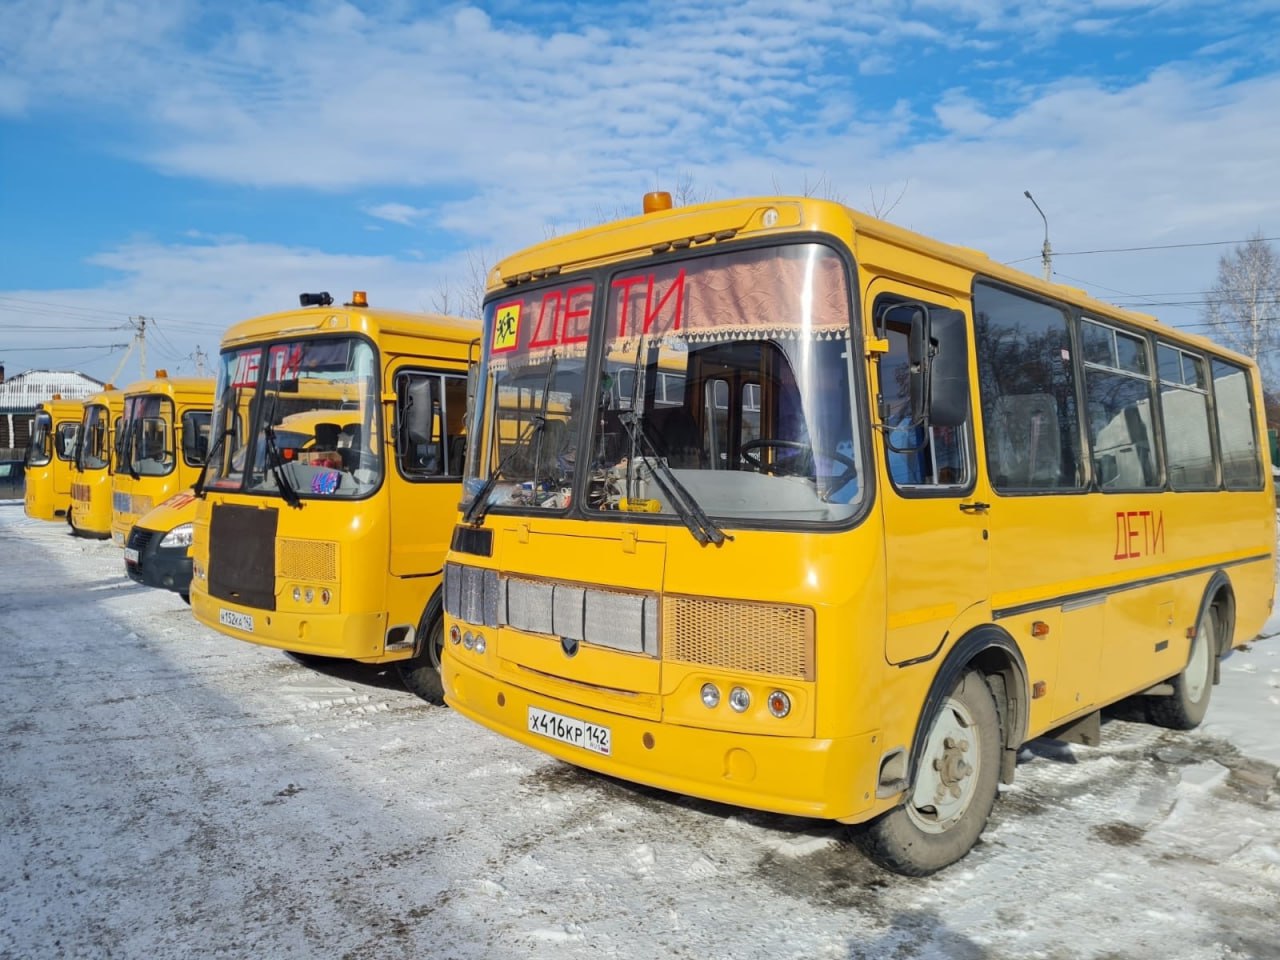  Сотрудники Госавтоинспекции продолжают проверять школьные автобусы в Кузбассе